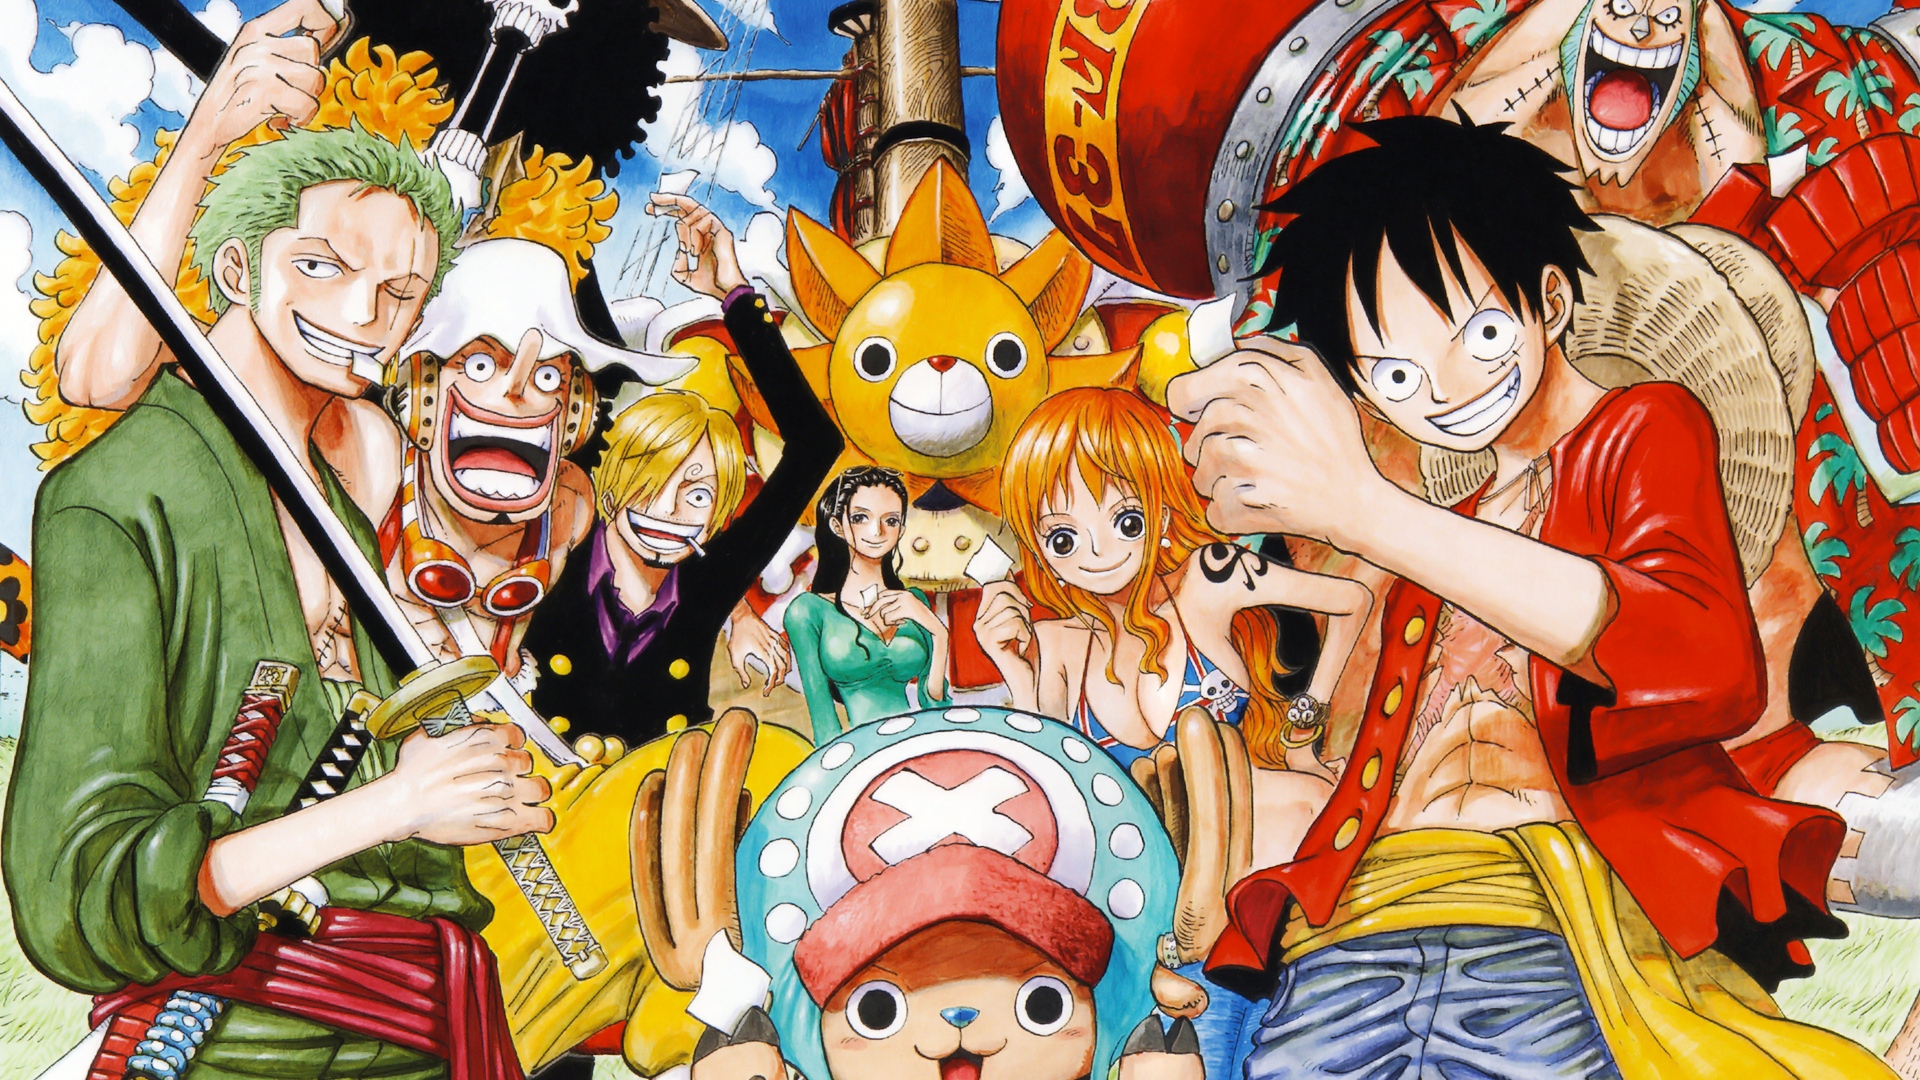 Série live-action de One Piece é oficializada pela Netflix